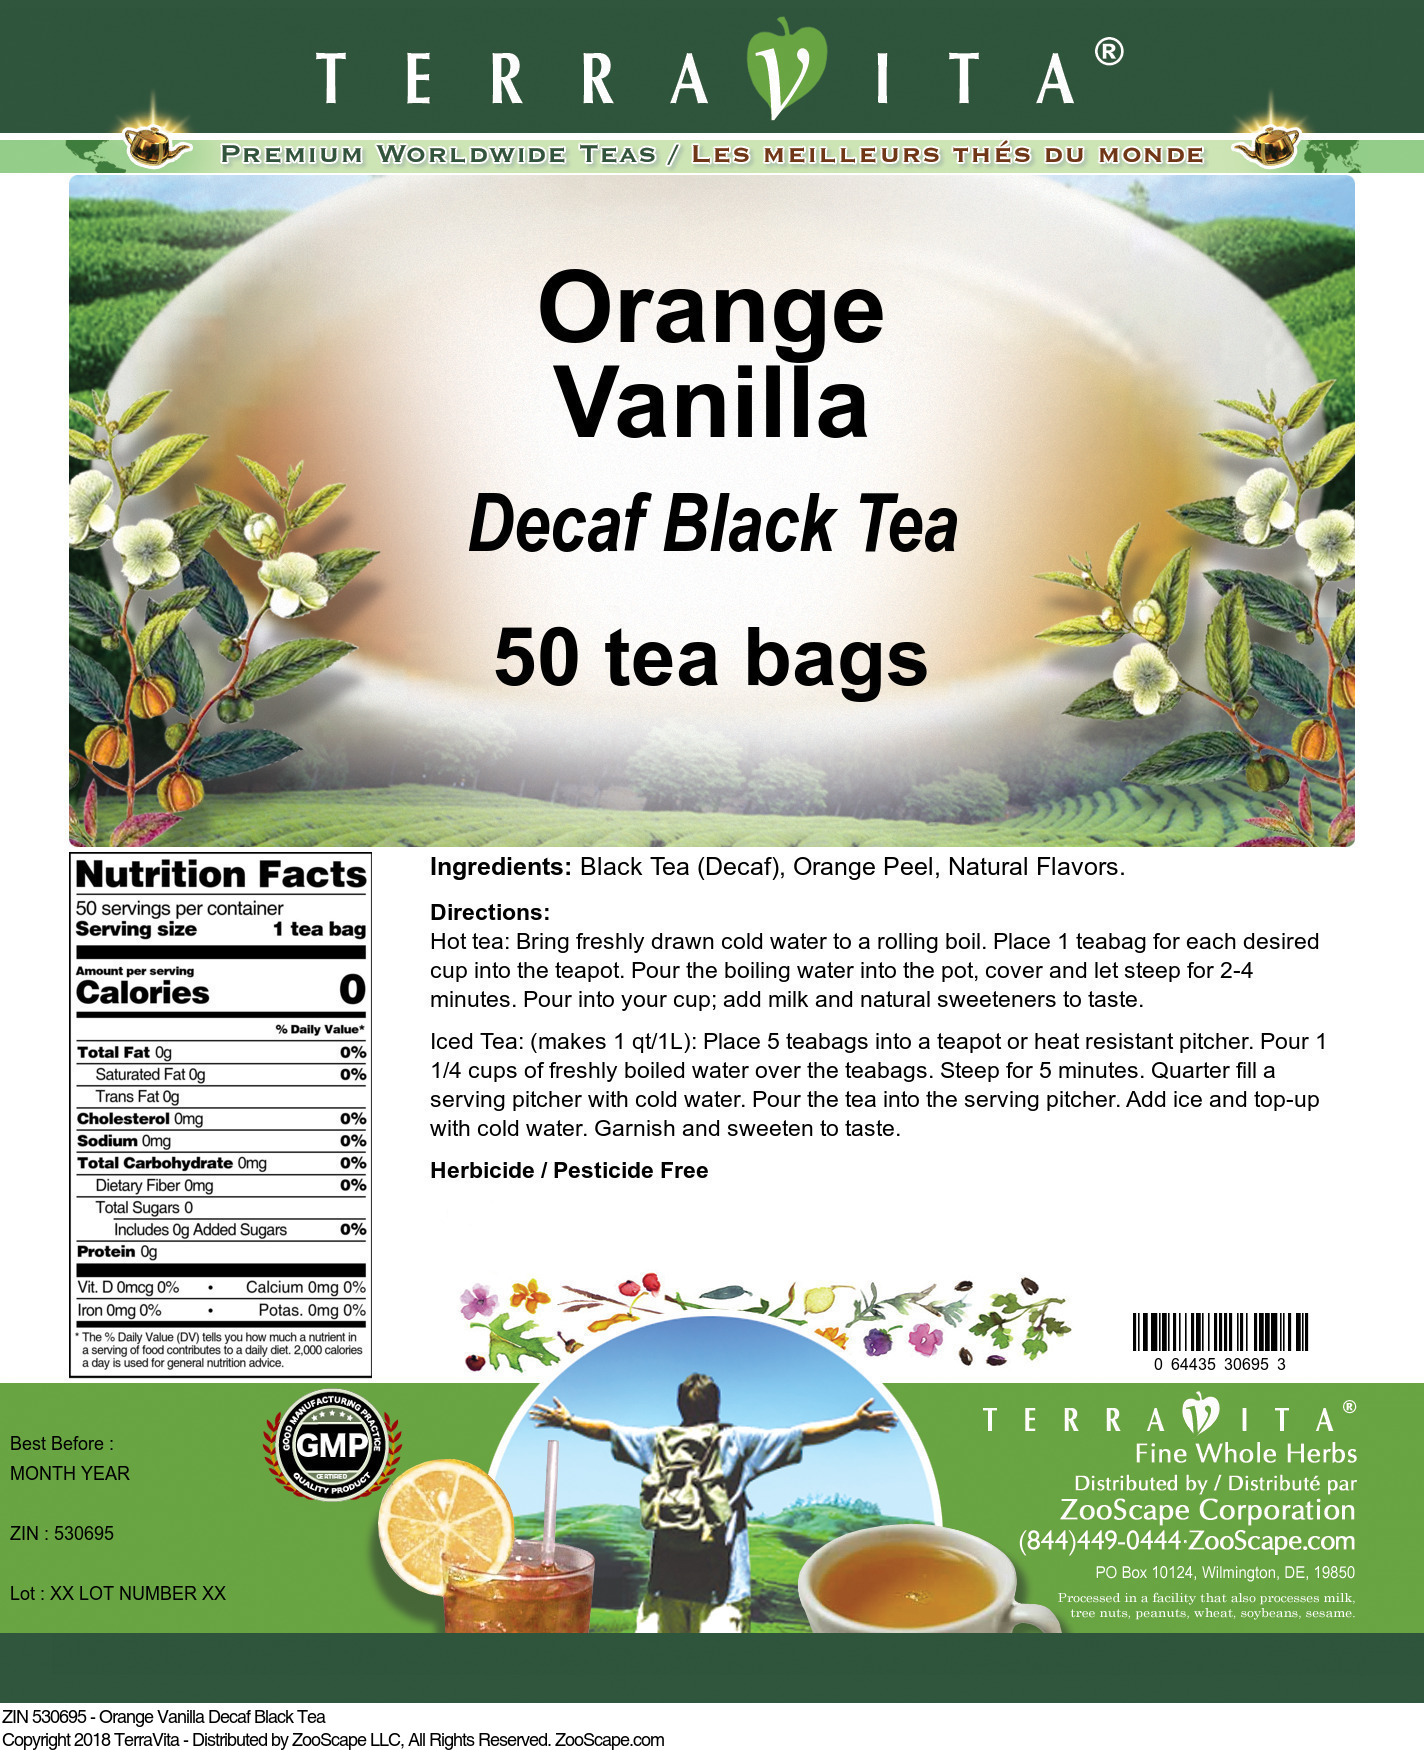 Orange Vanilla Decaf Black Tea - Label